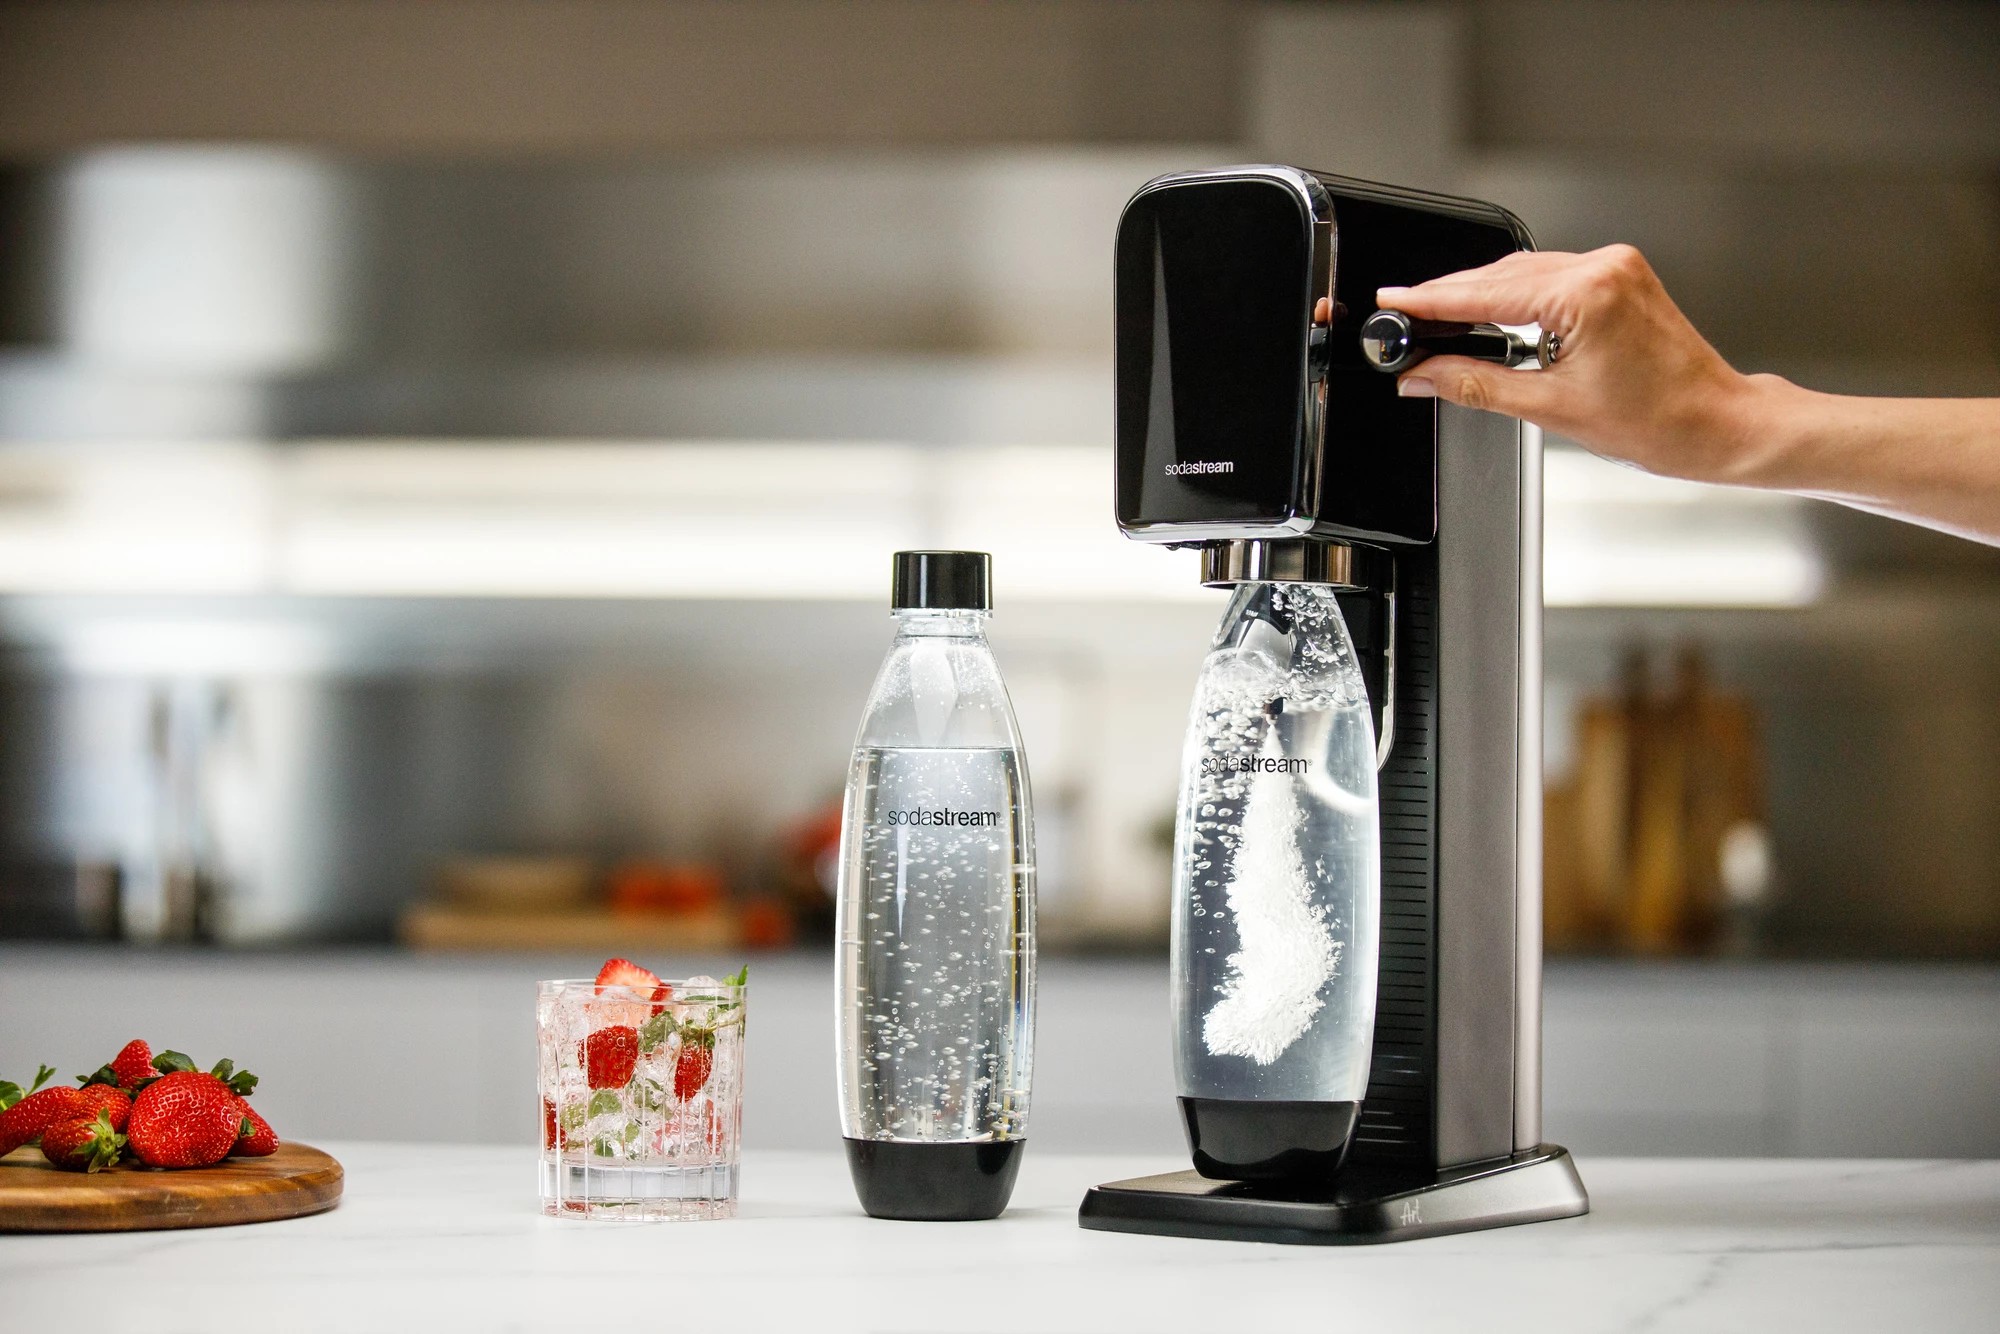 SodaStream Art Sparkling Water Maker